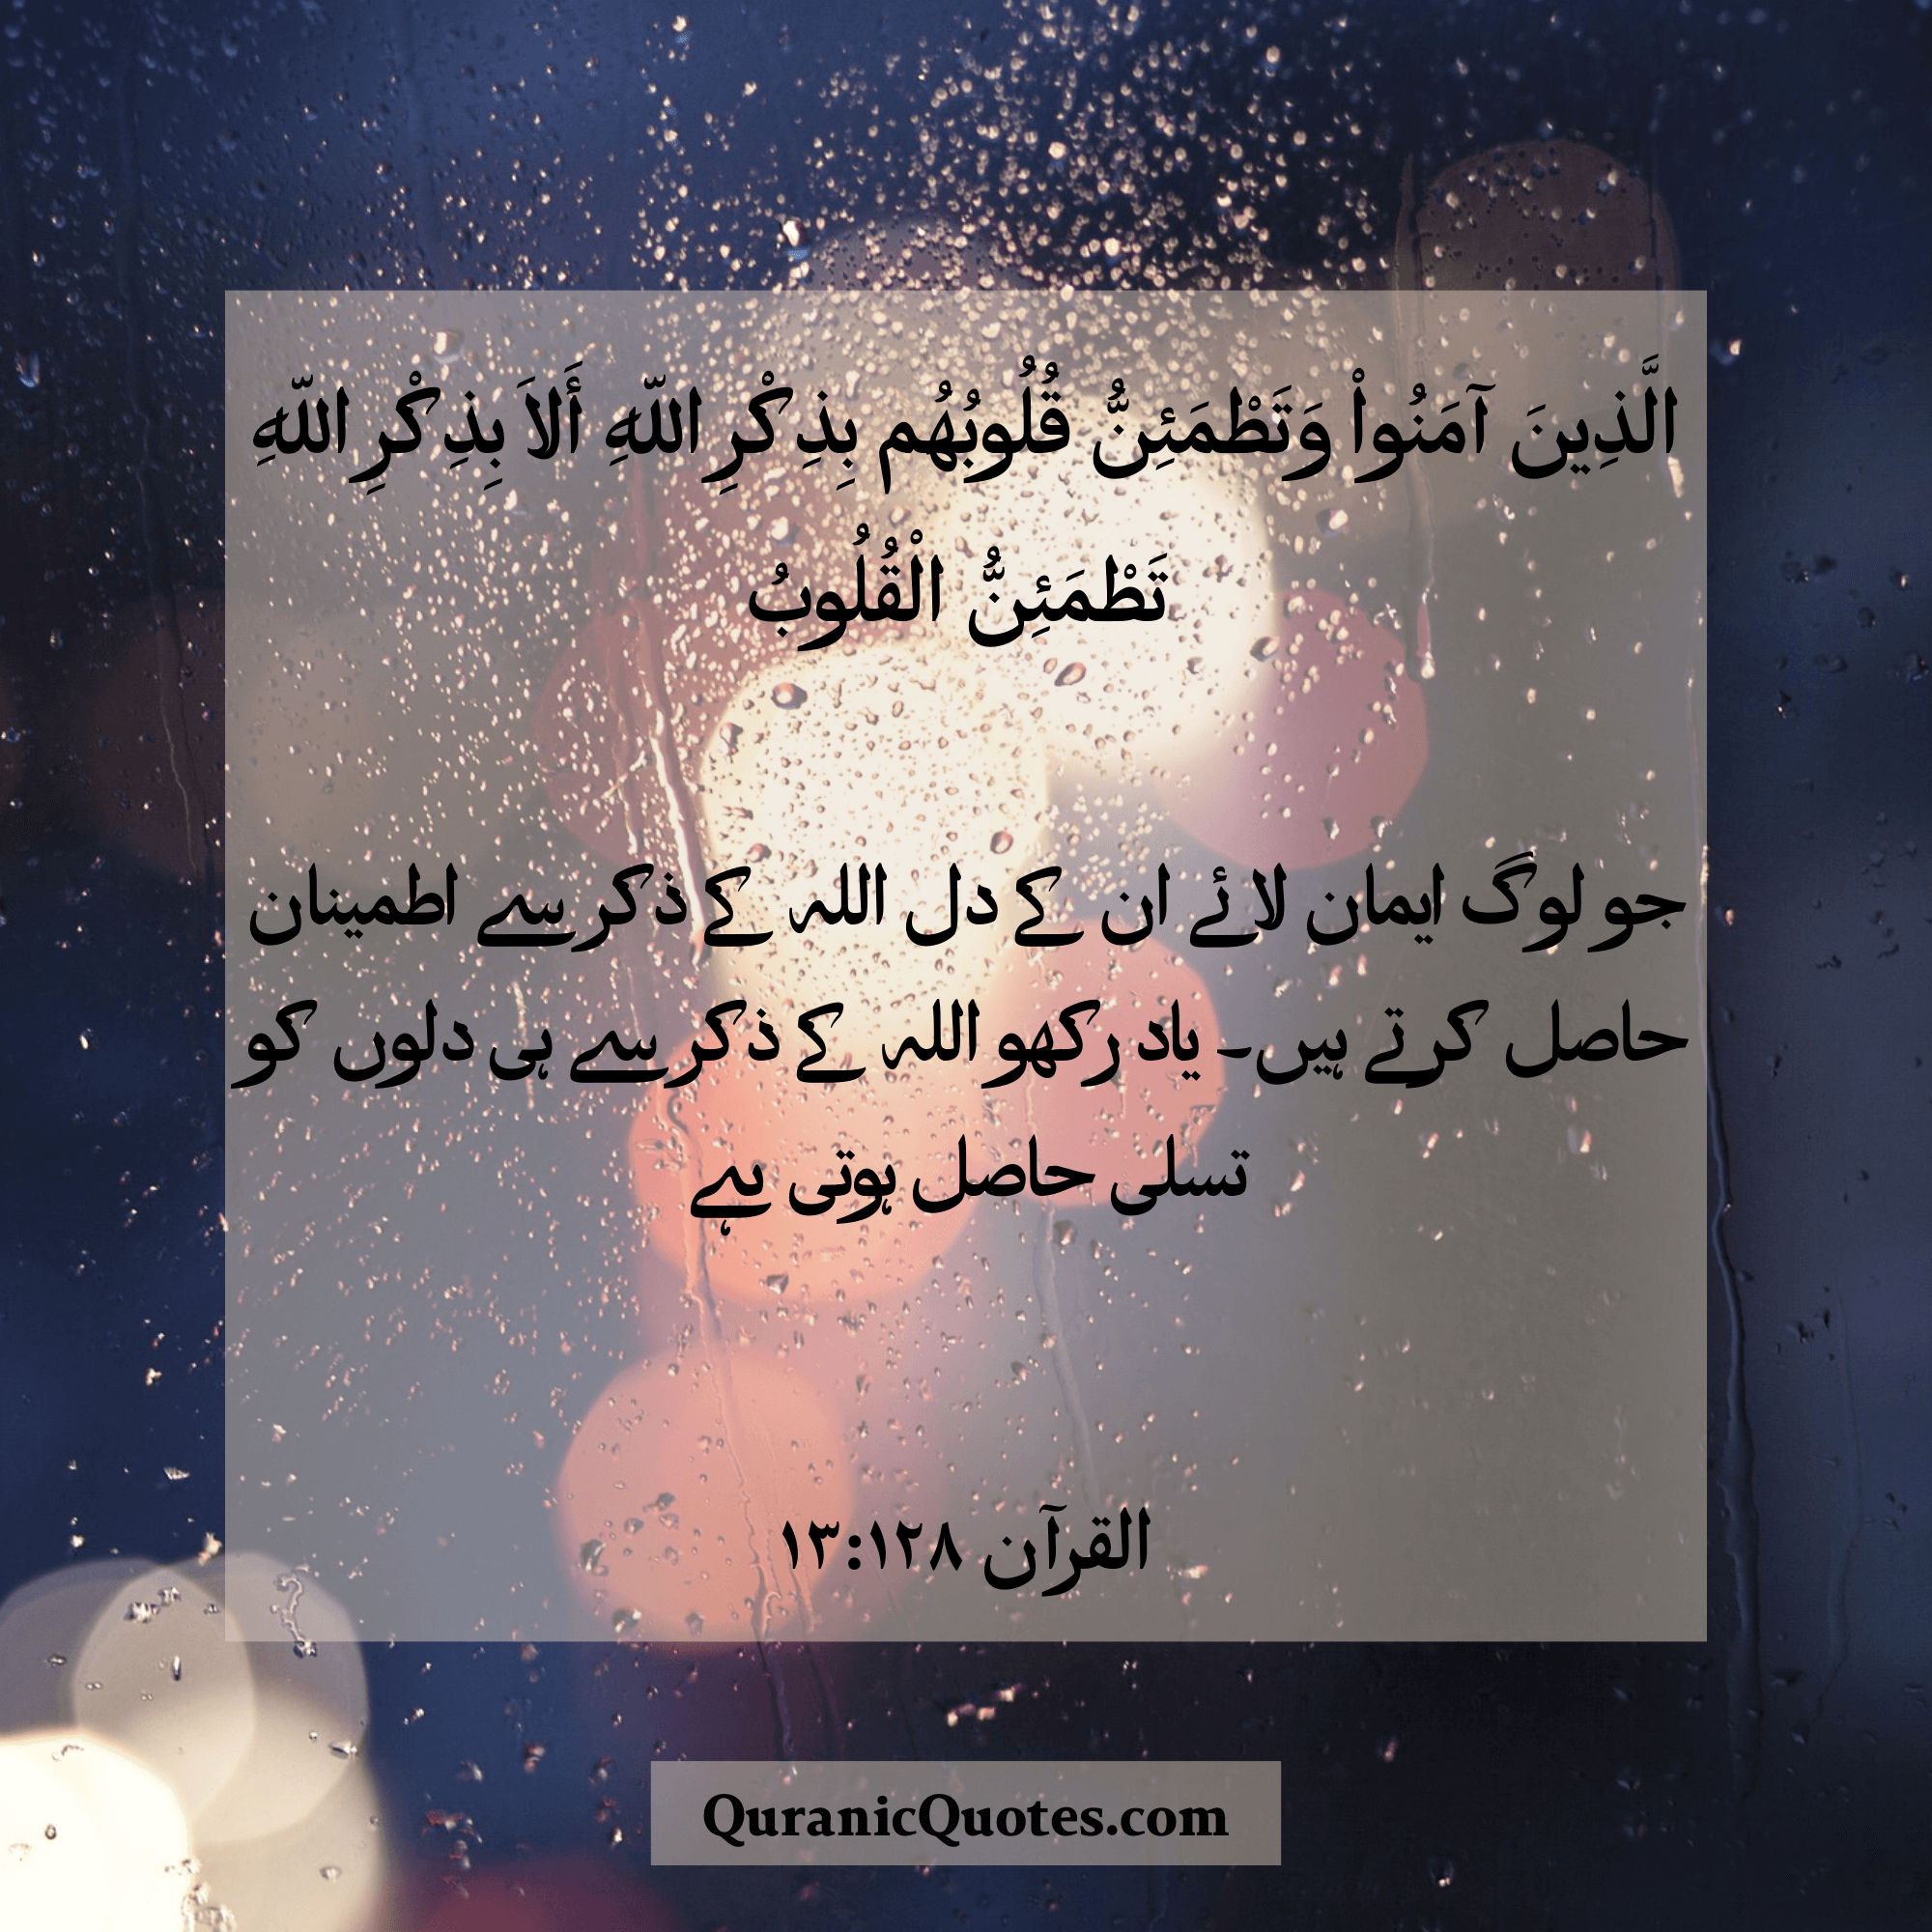 Quranic Quotes in Urdu 495